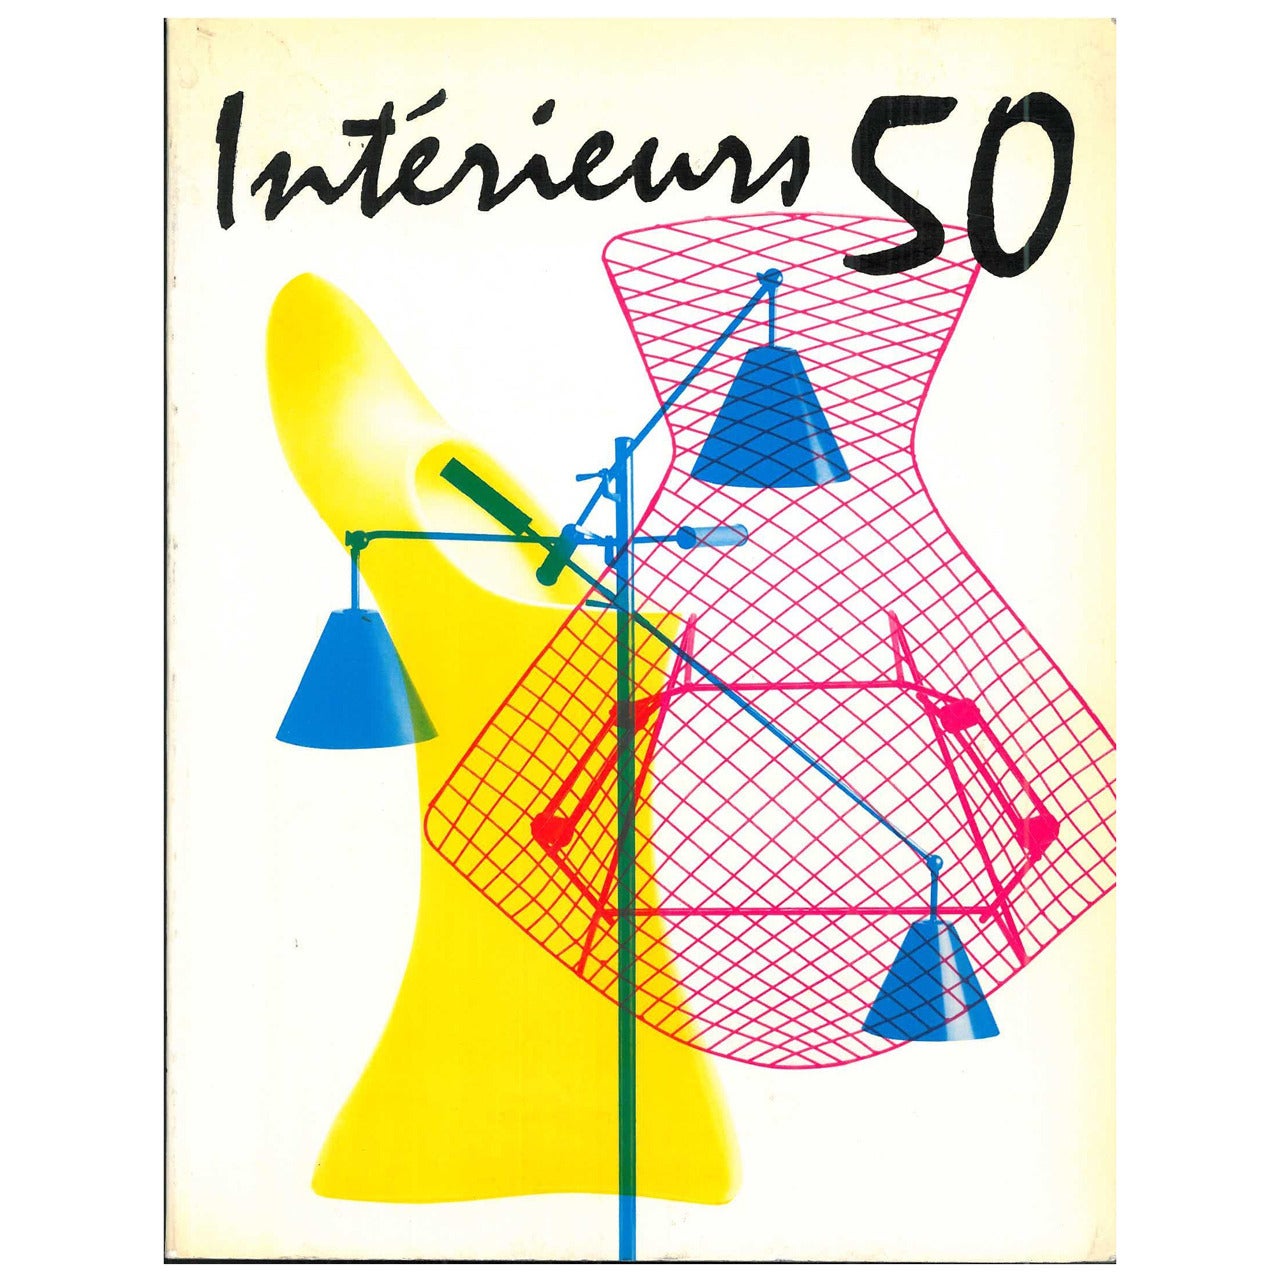 Interieurs 50 (Book)